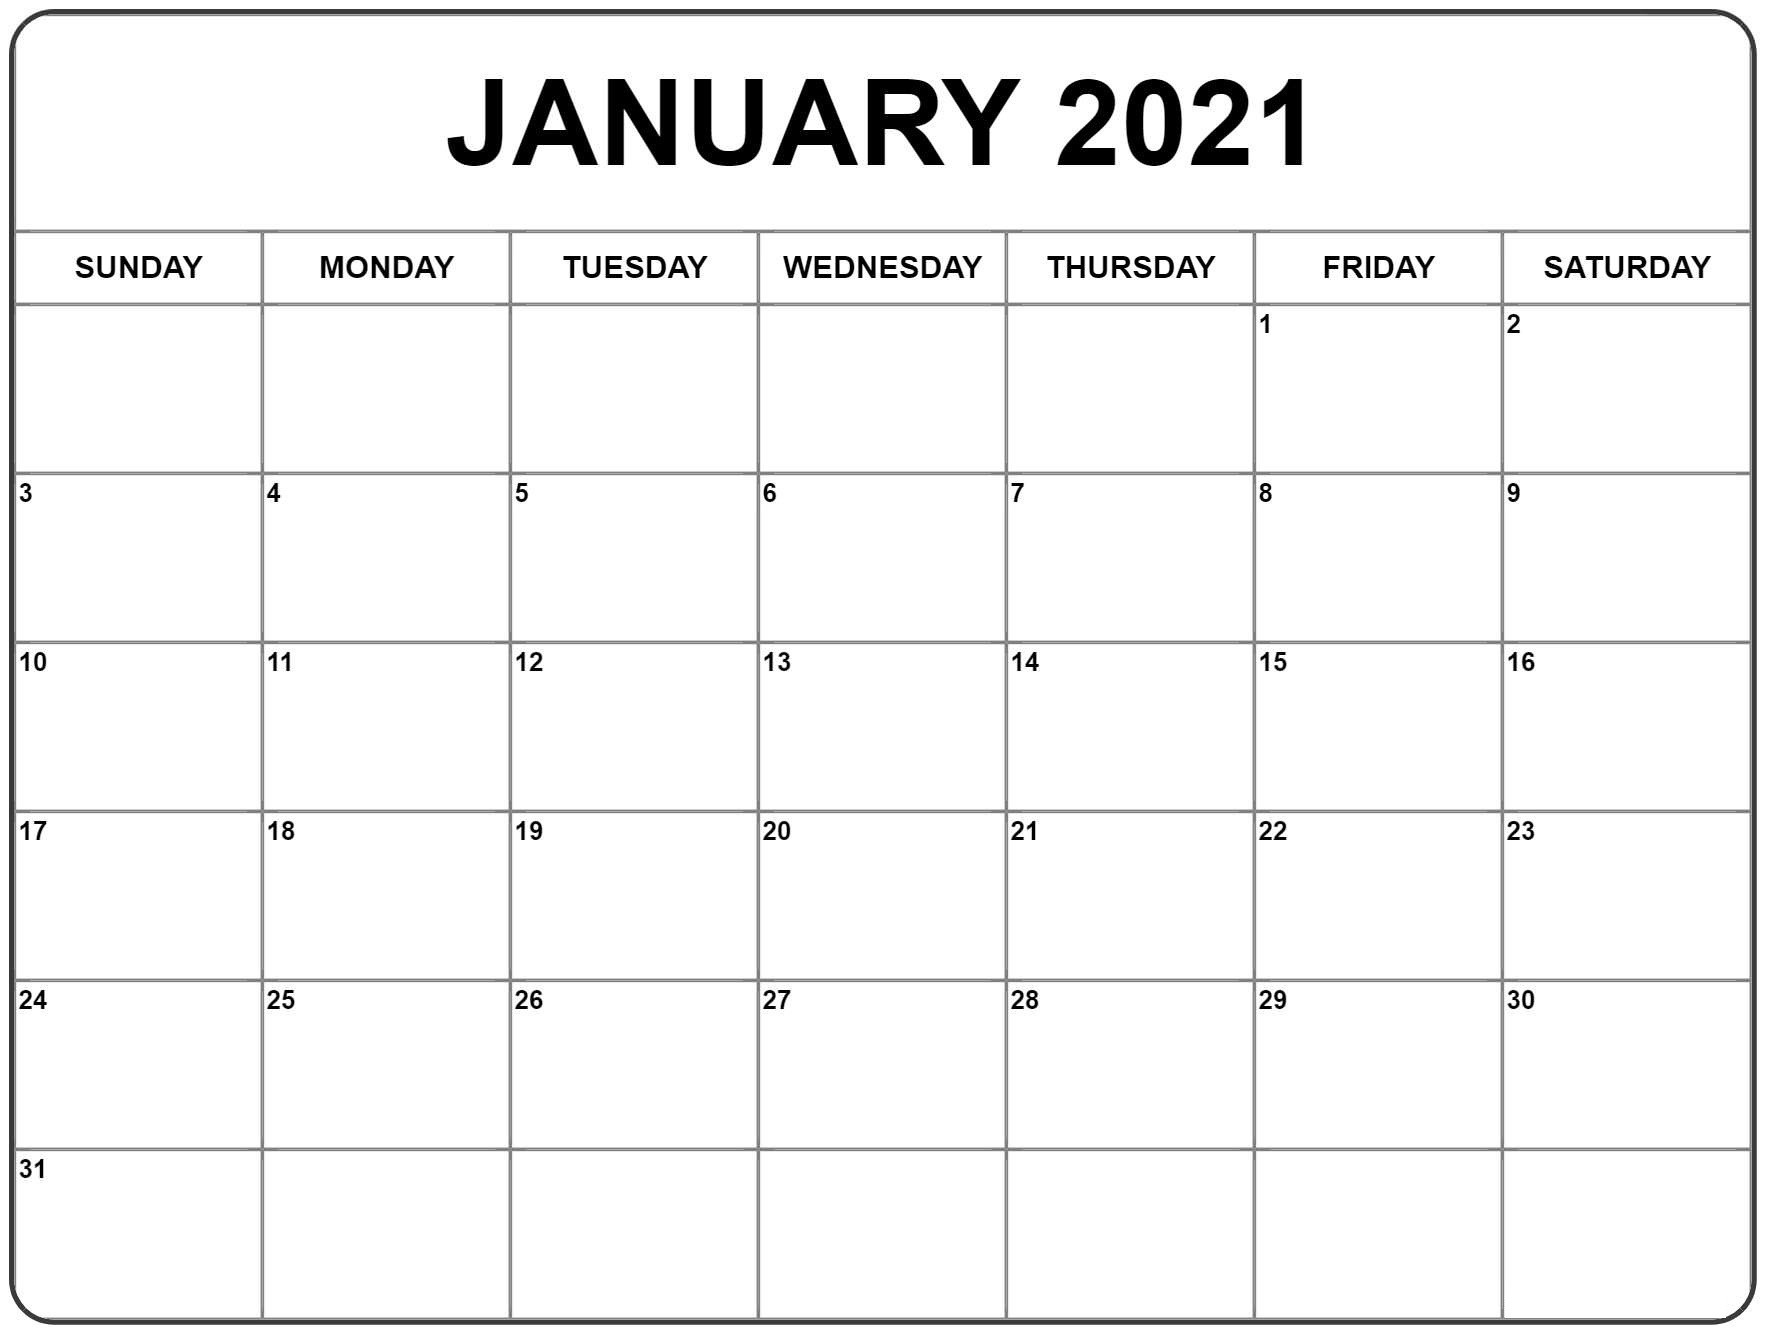 June 2021 Calendar Word Doc | Calendar Template Printable Free Printable June 2021 Calendar With Holidays